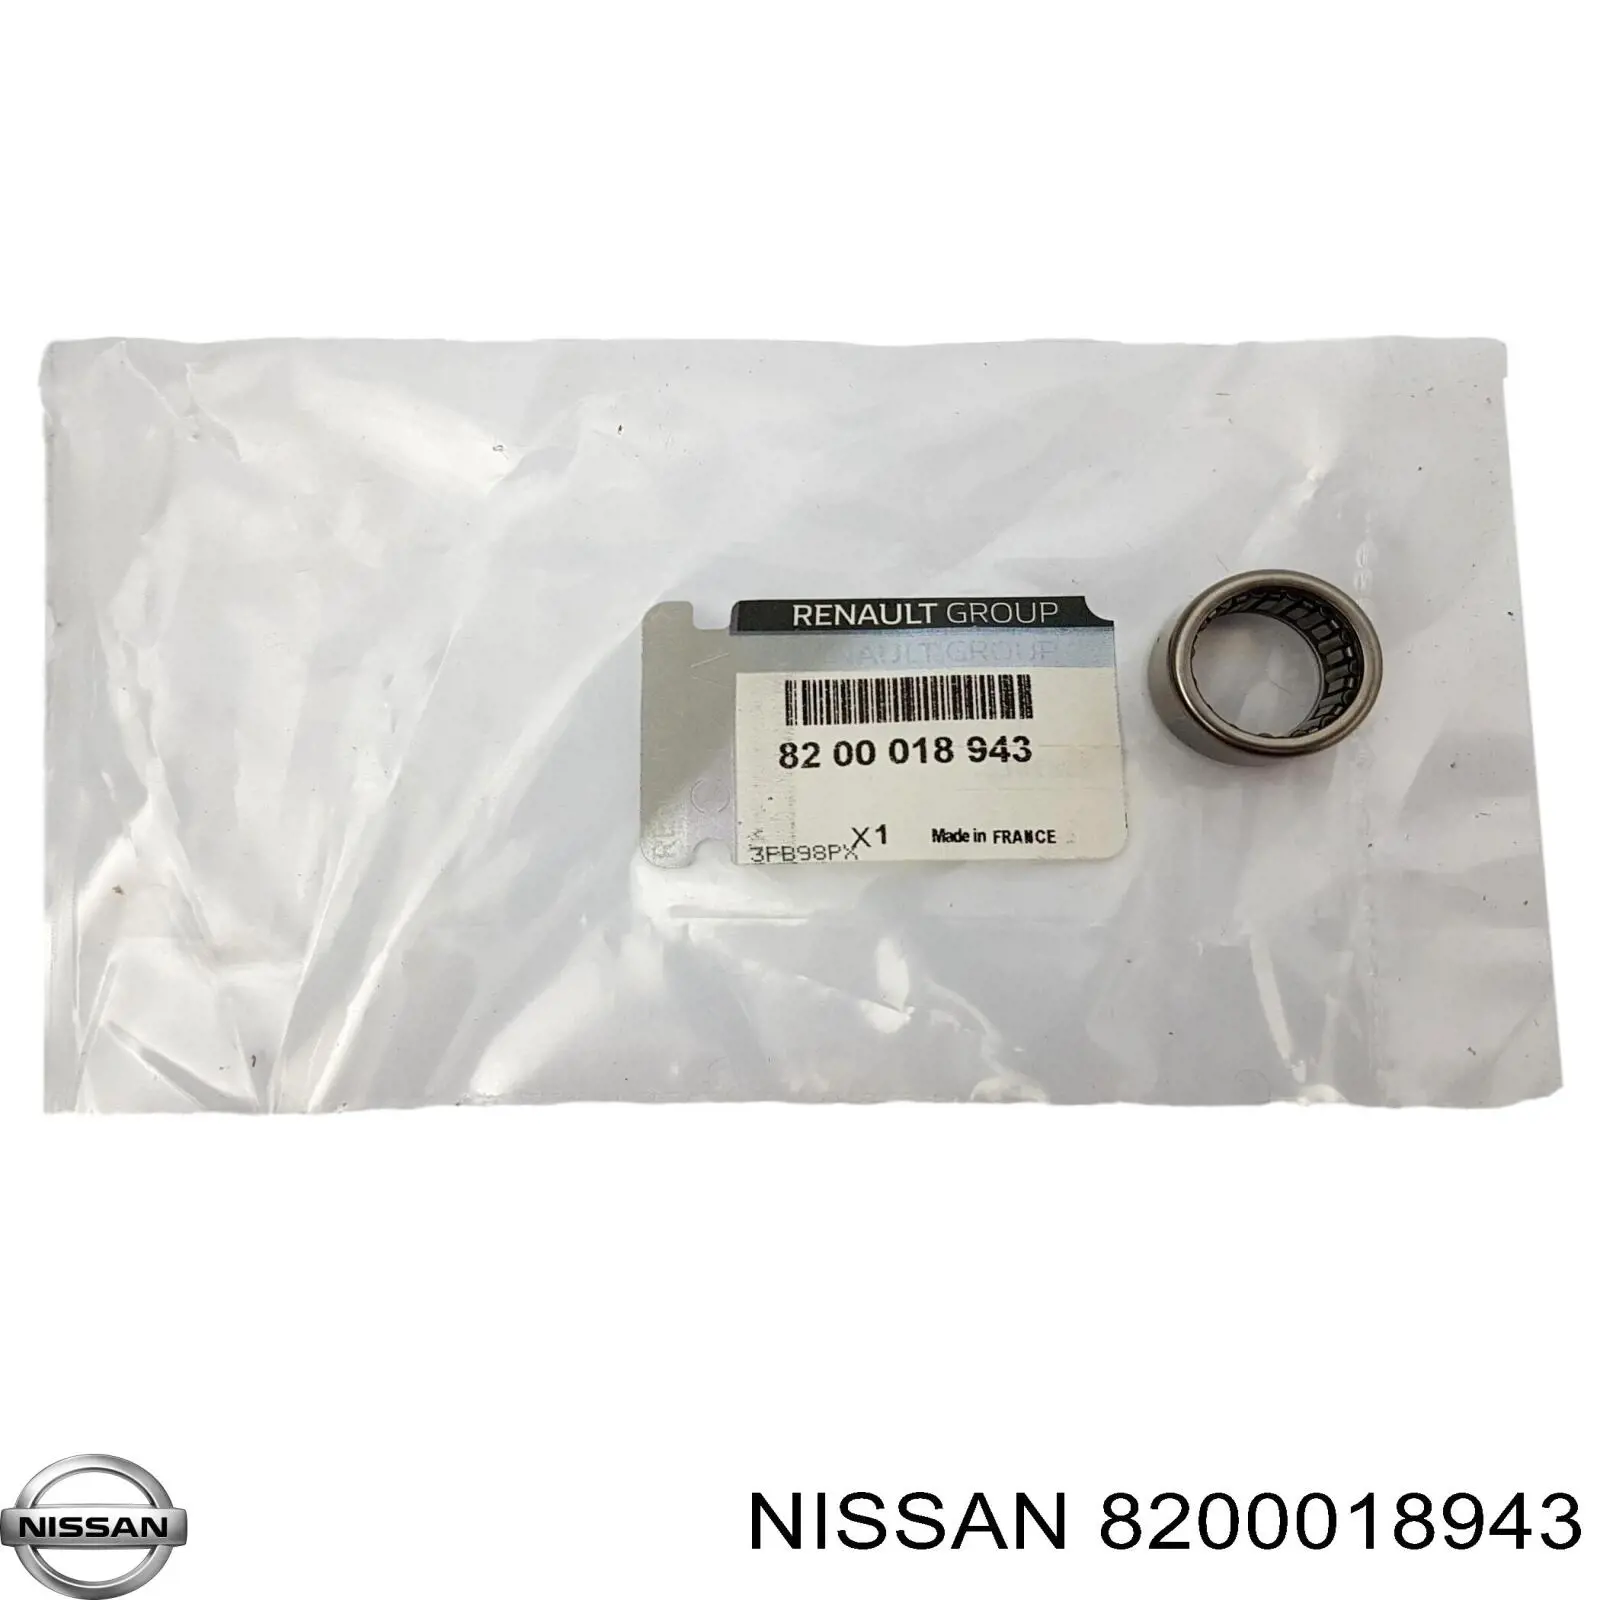 Опорный подшипник первичного вала КПП (центрирующий подшипник маховика) Nissan 8200018943